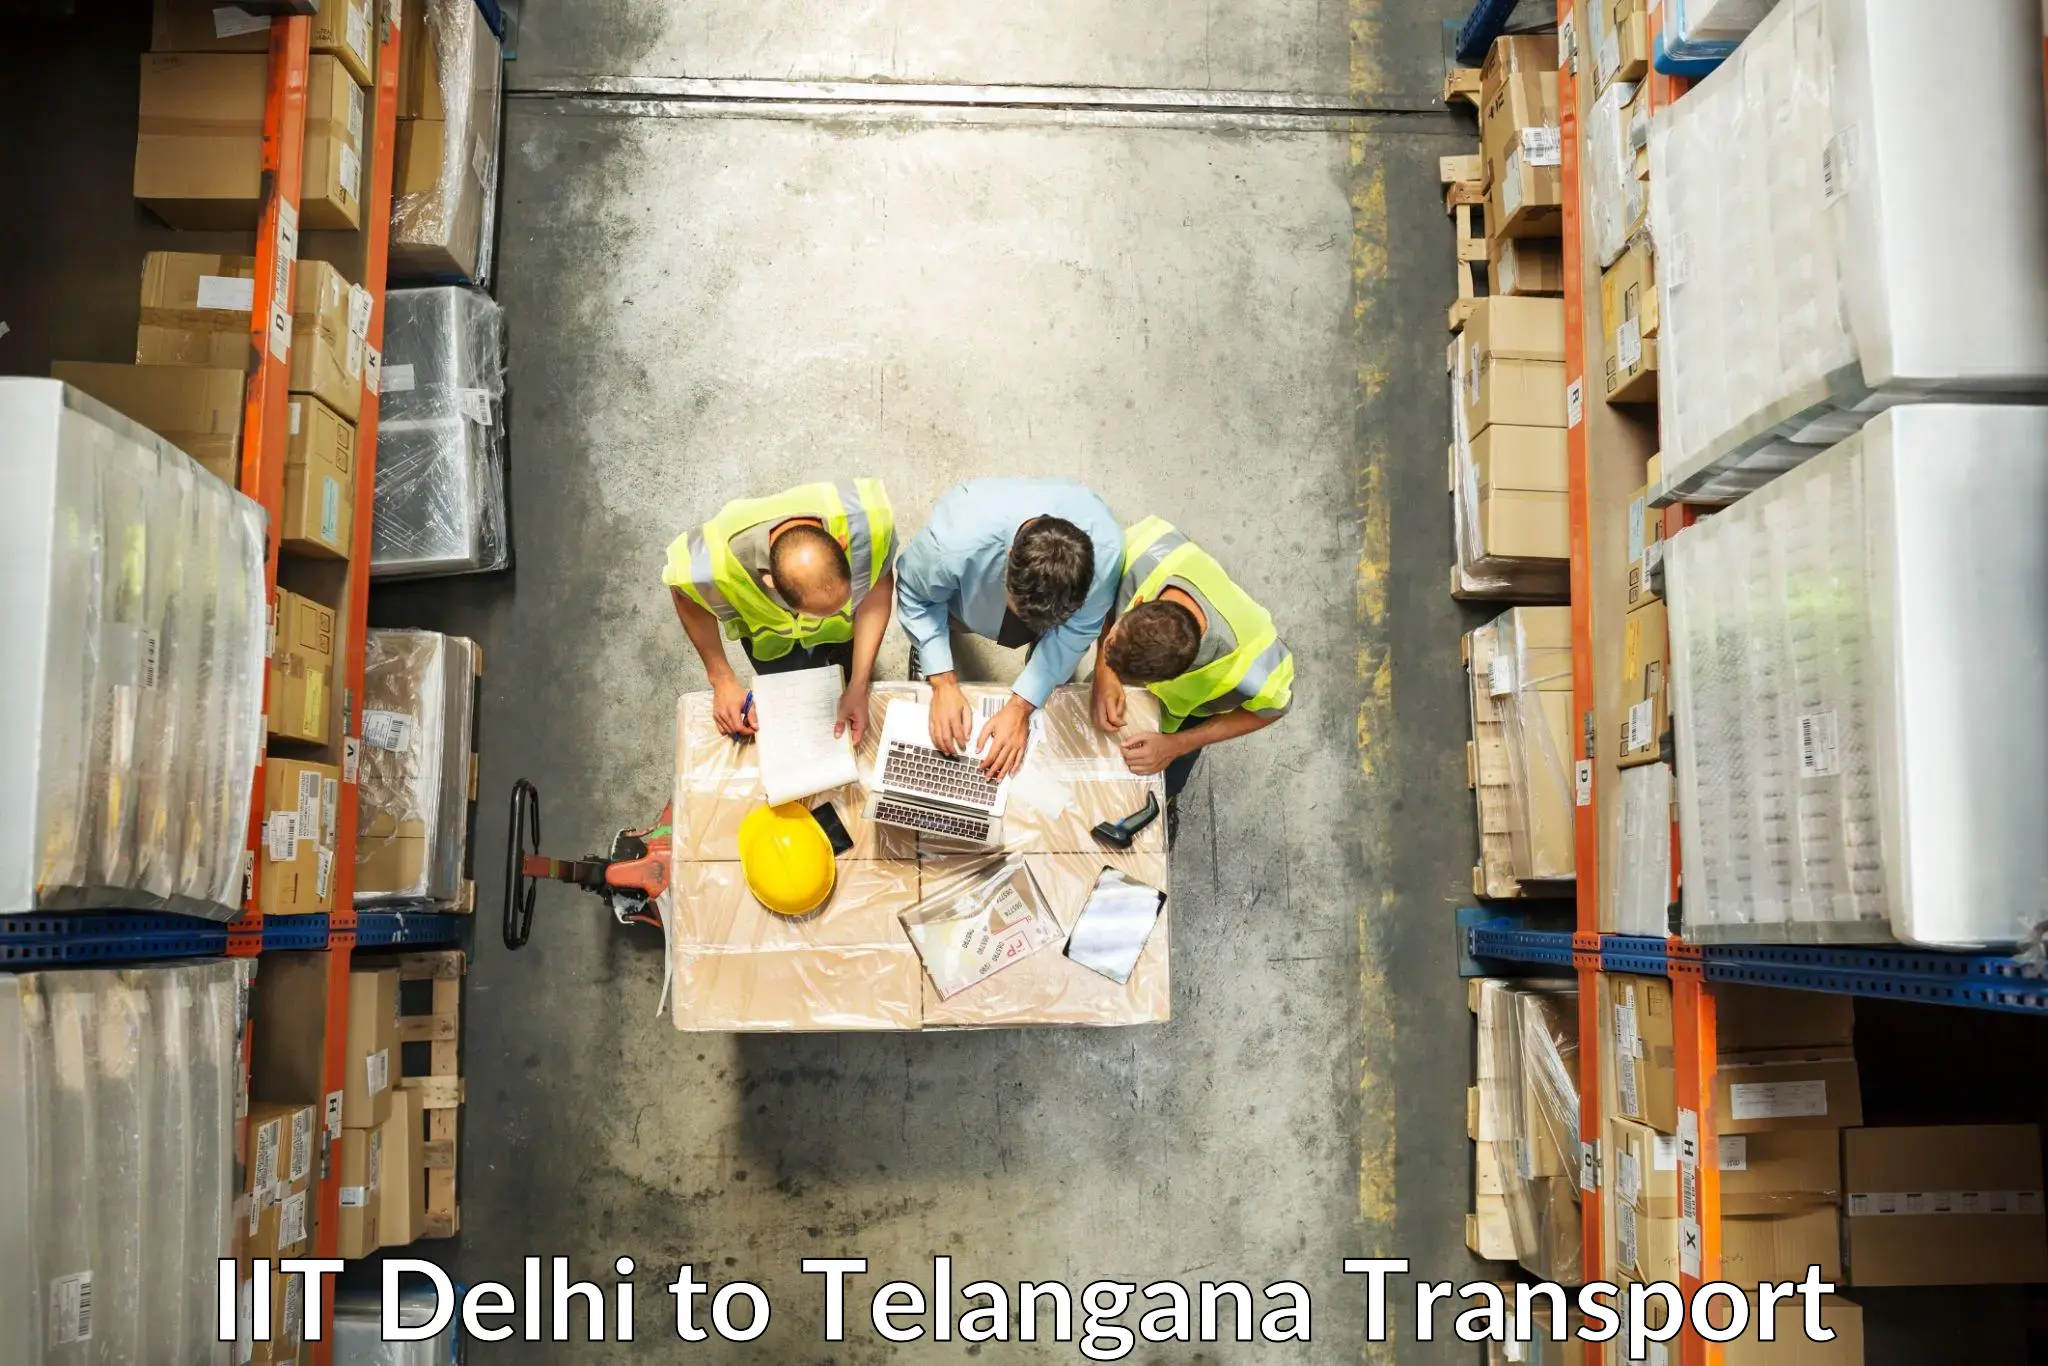 Online transport service IIT Delhi to Cherial